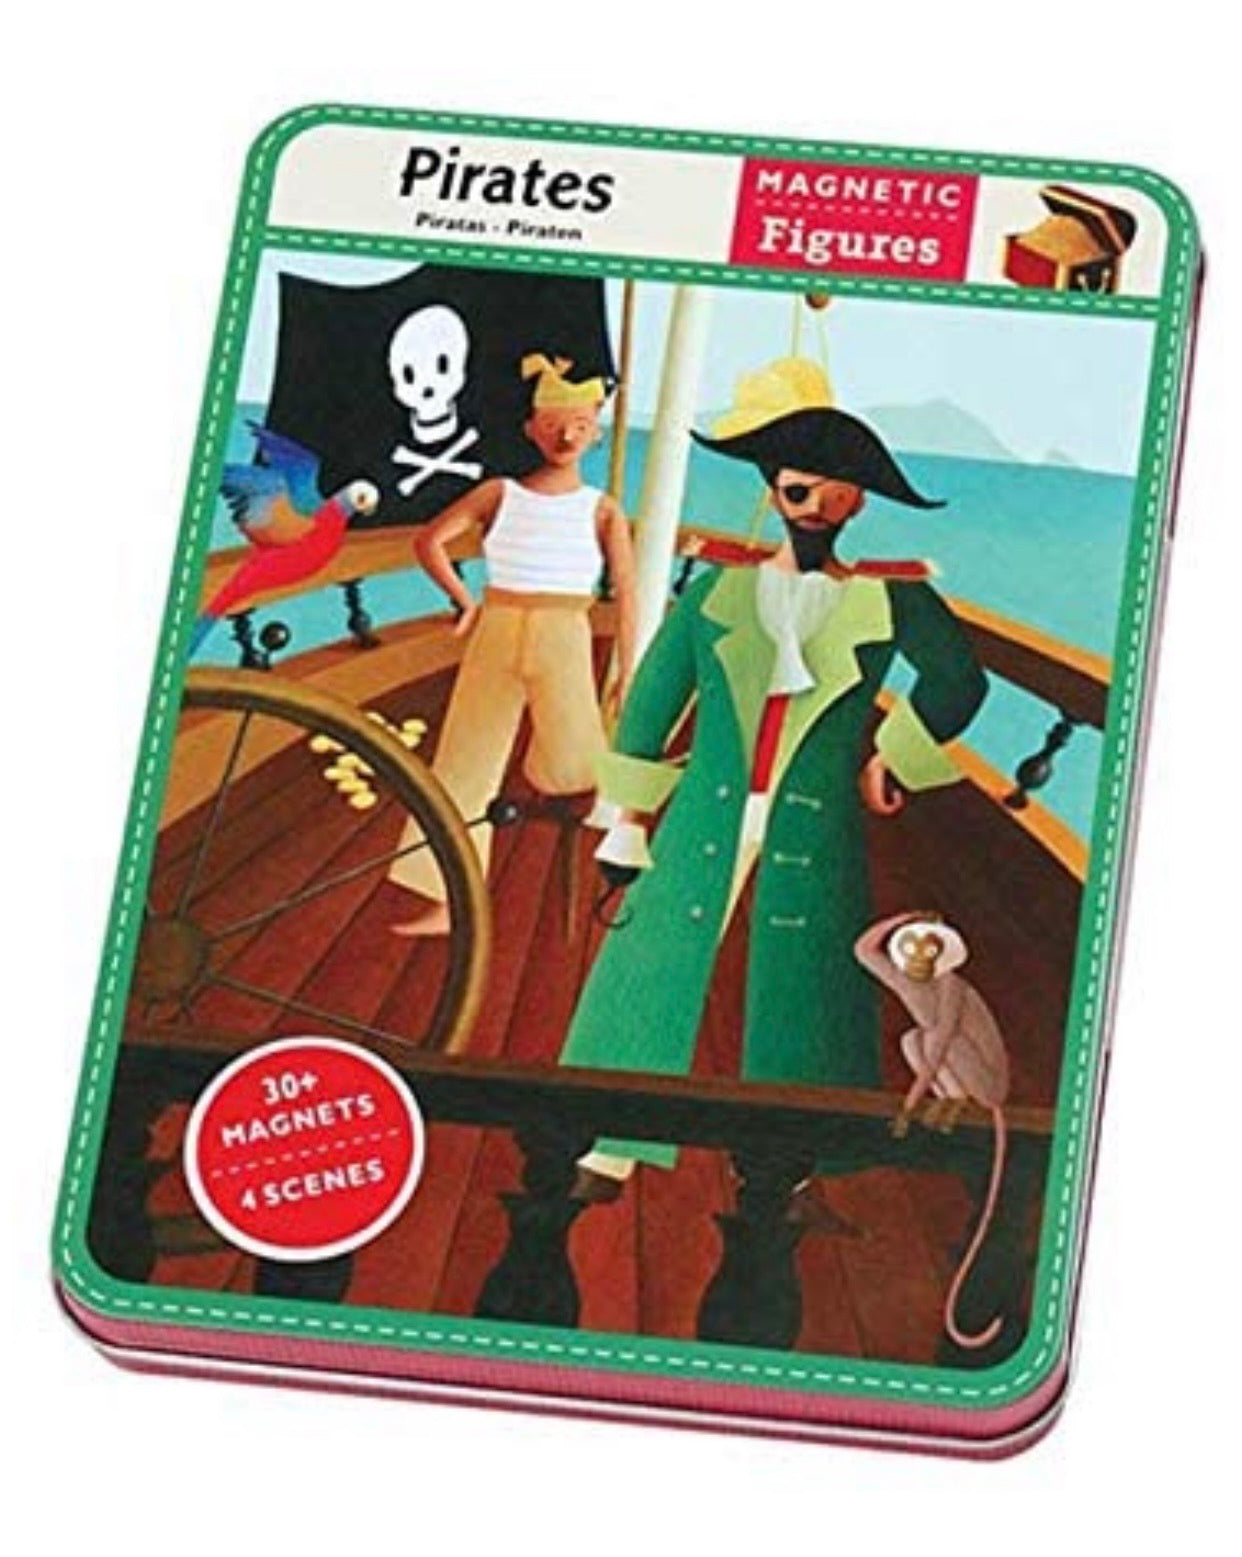 Pirates Magnet Set